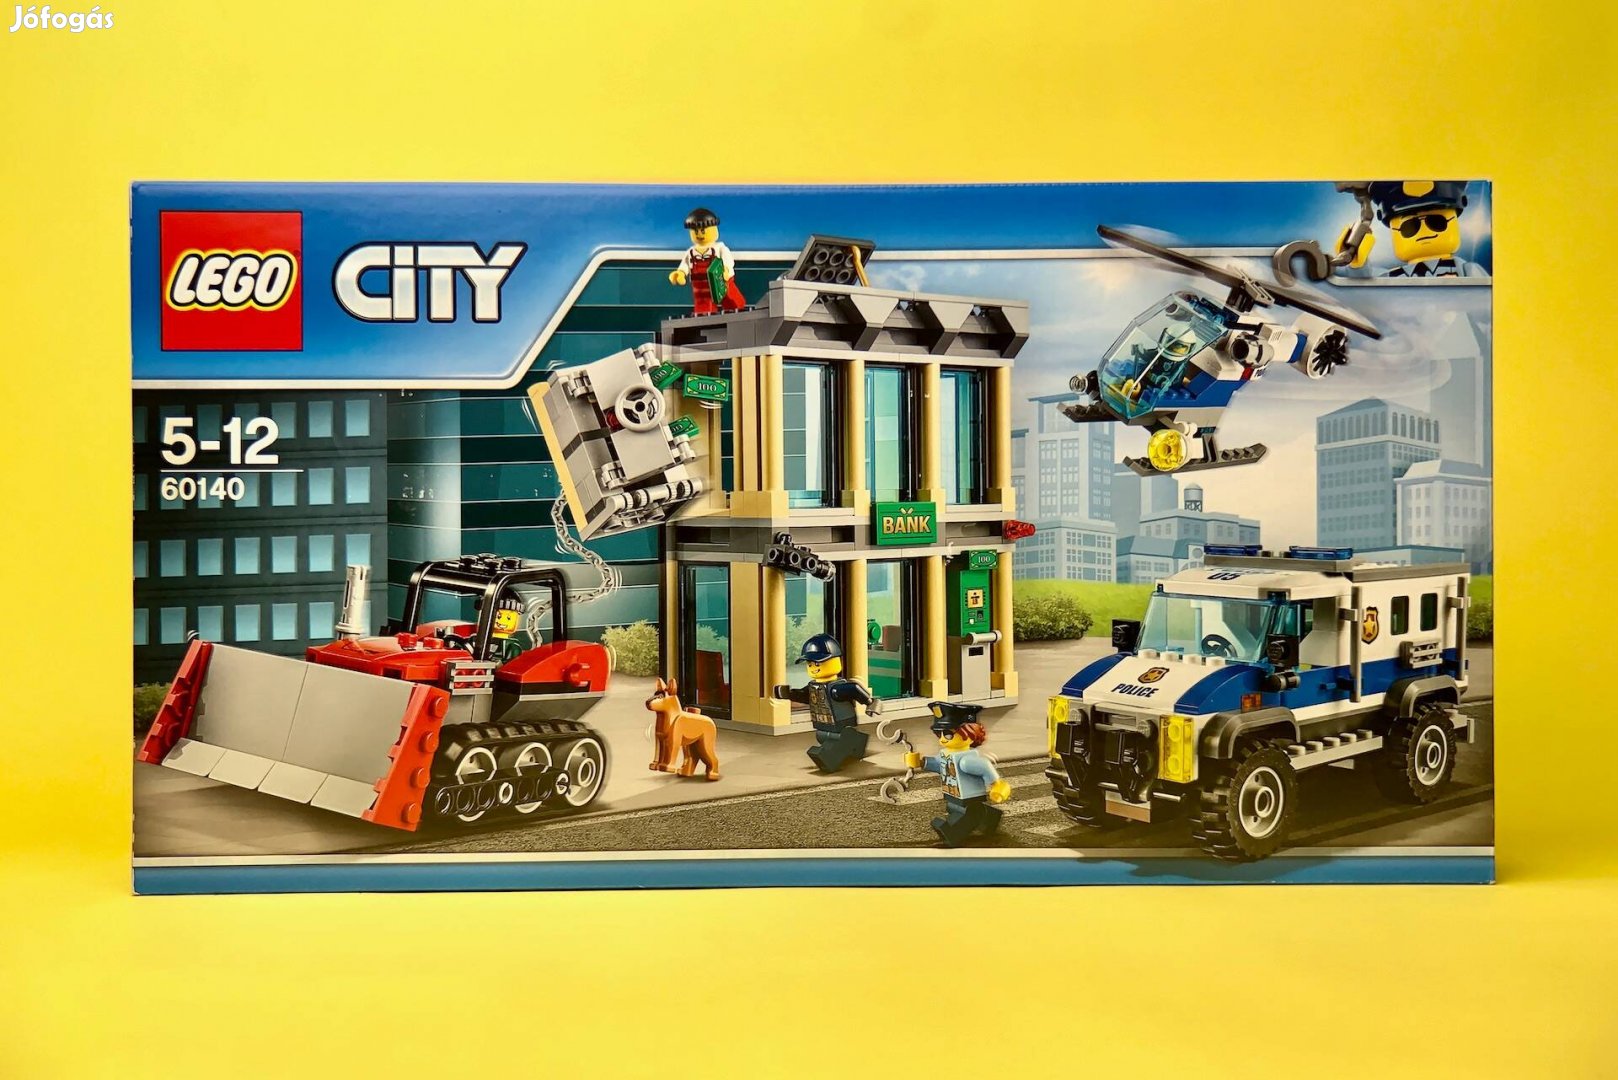 LEGO City 60140 Buldózeres betörés, Uj, Bontatlan